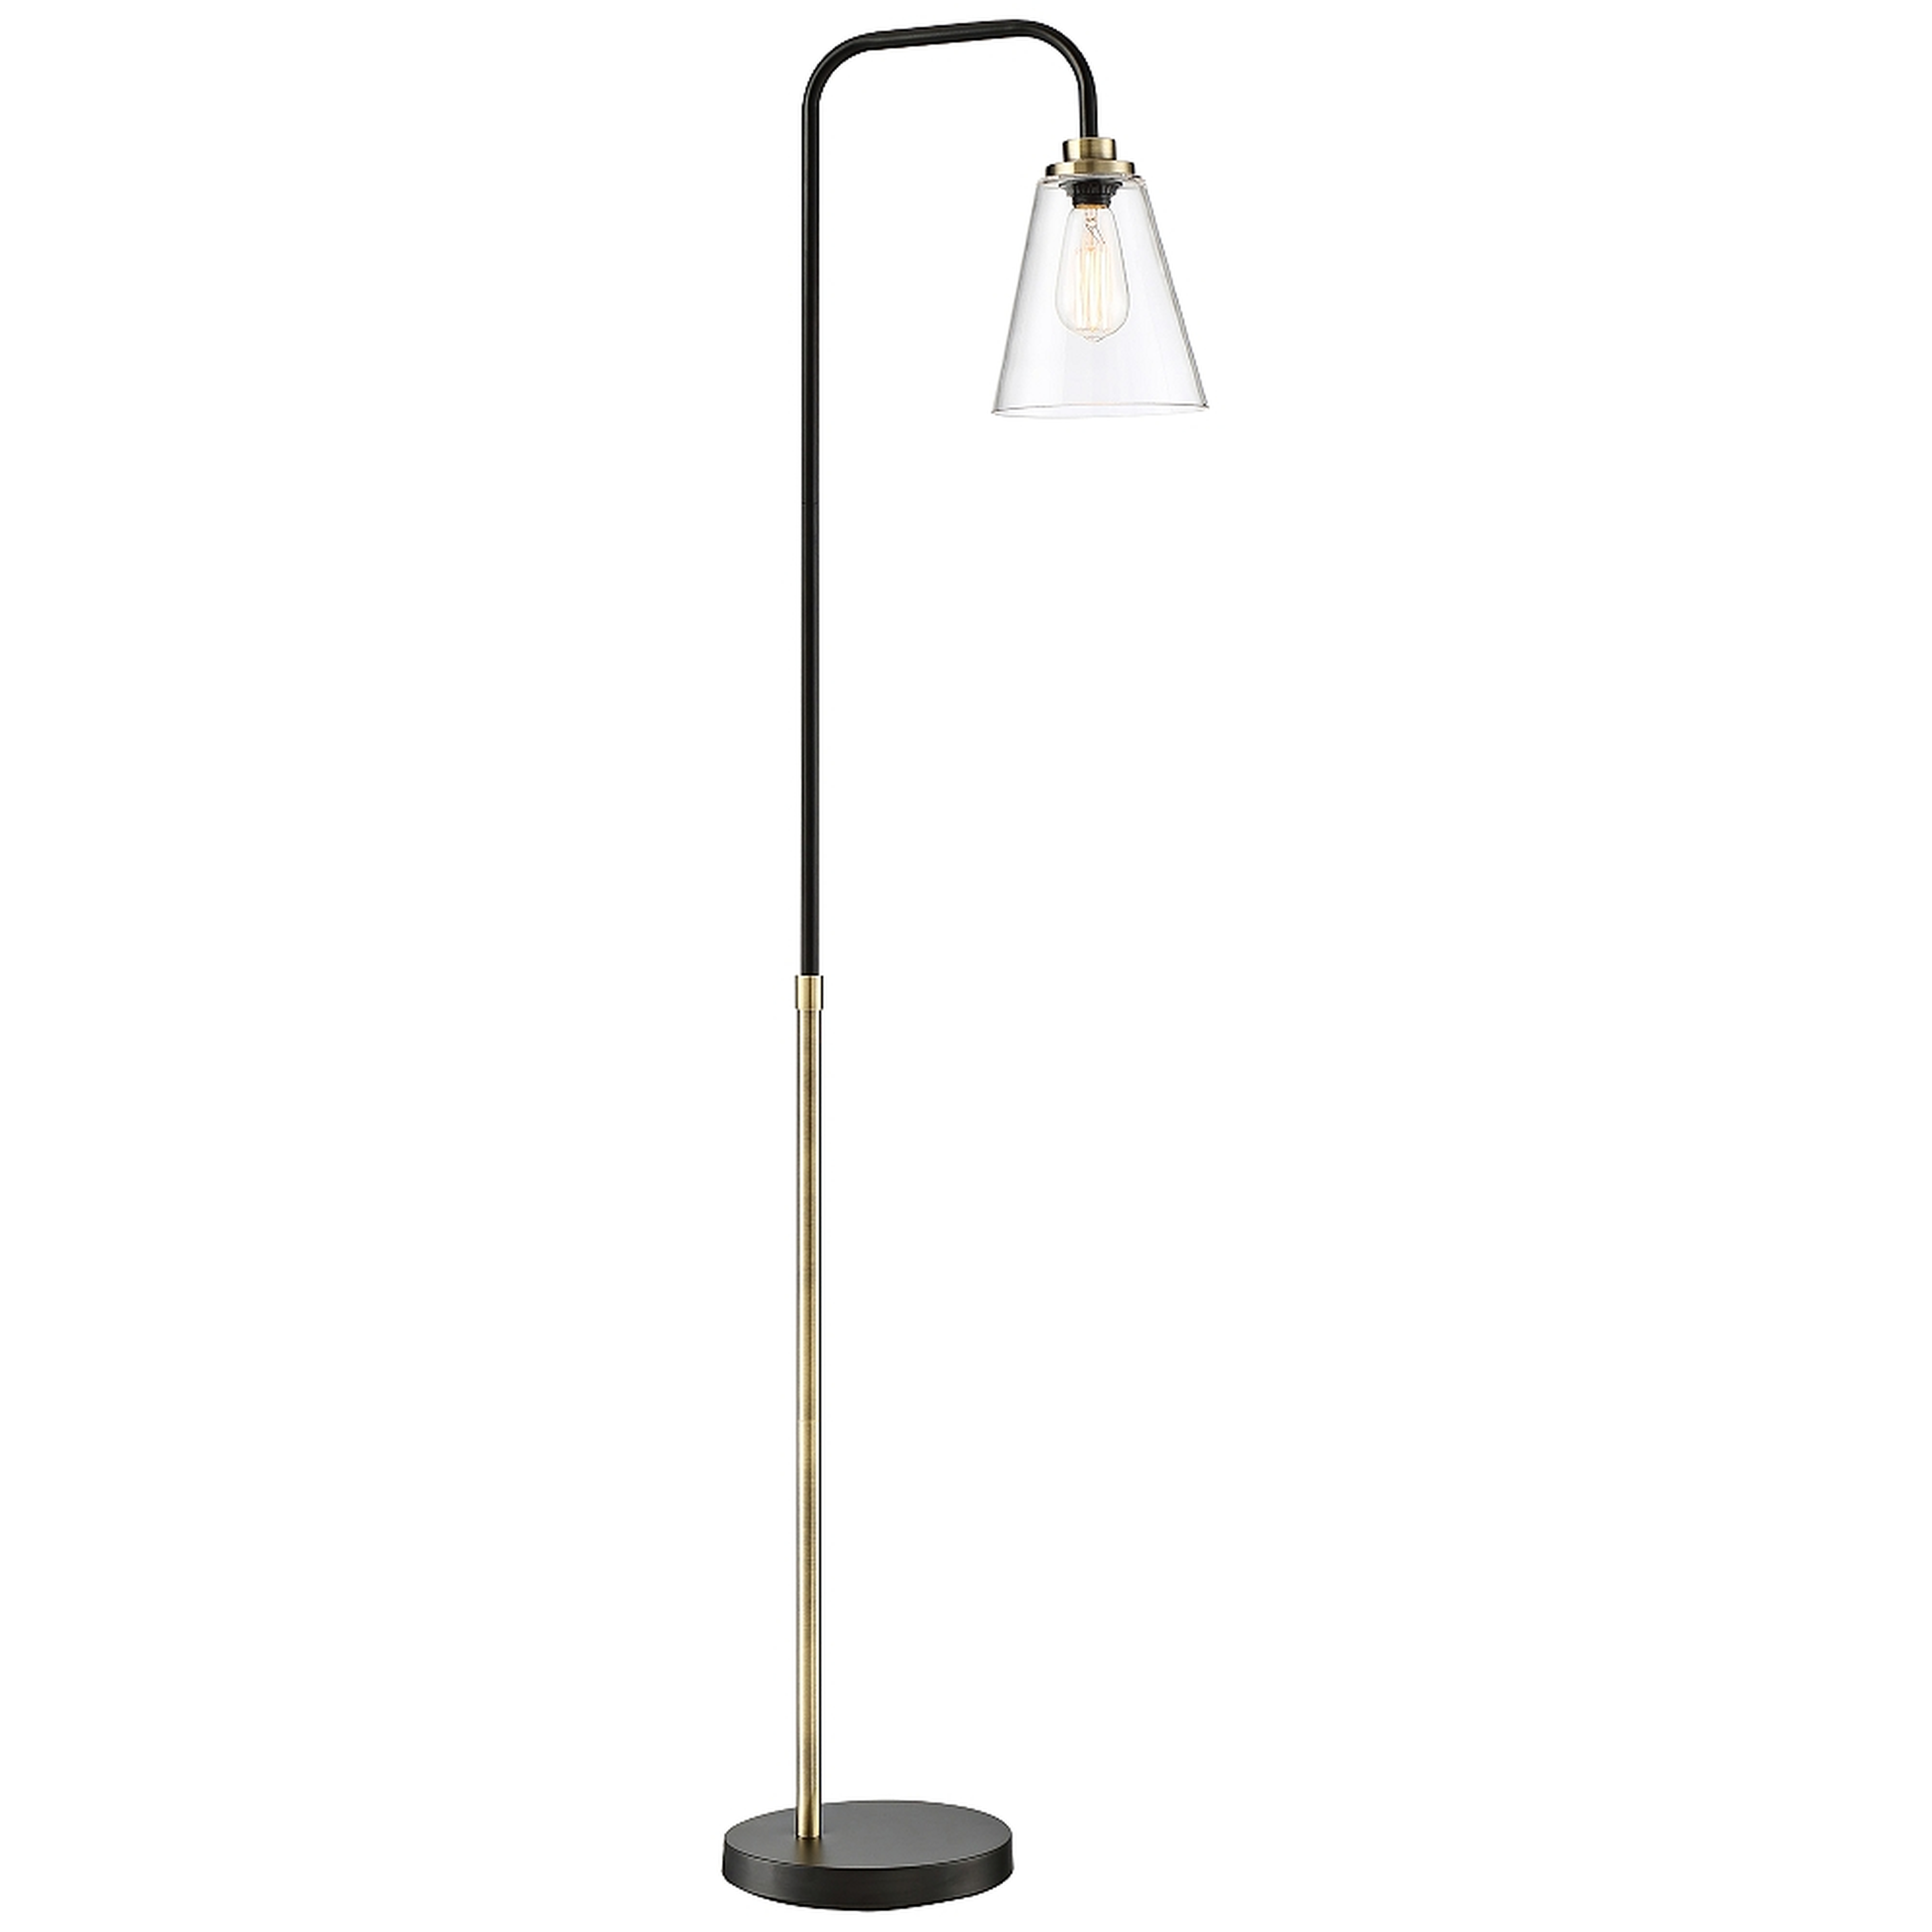 Lite Source Colinton Antique Brass Metal Floor Lamp - Style # 69M42 - Lamps Plus